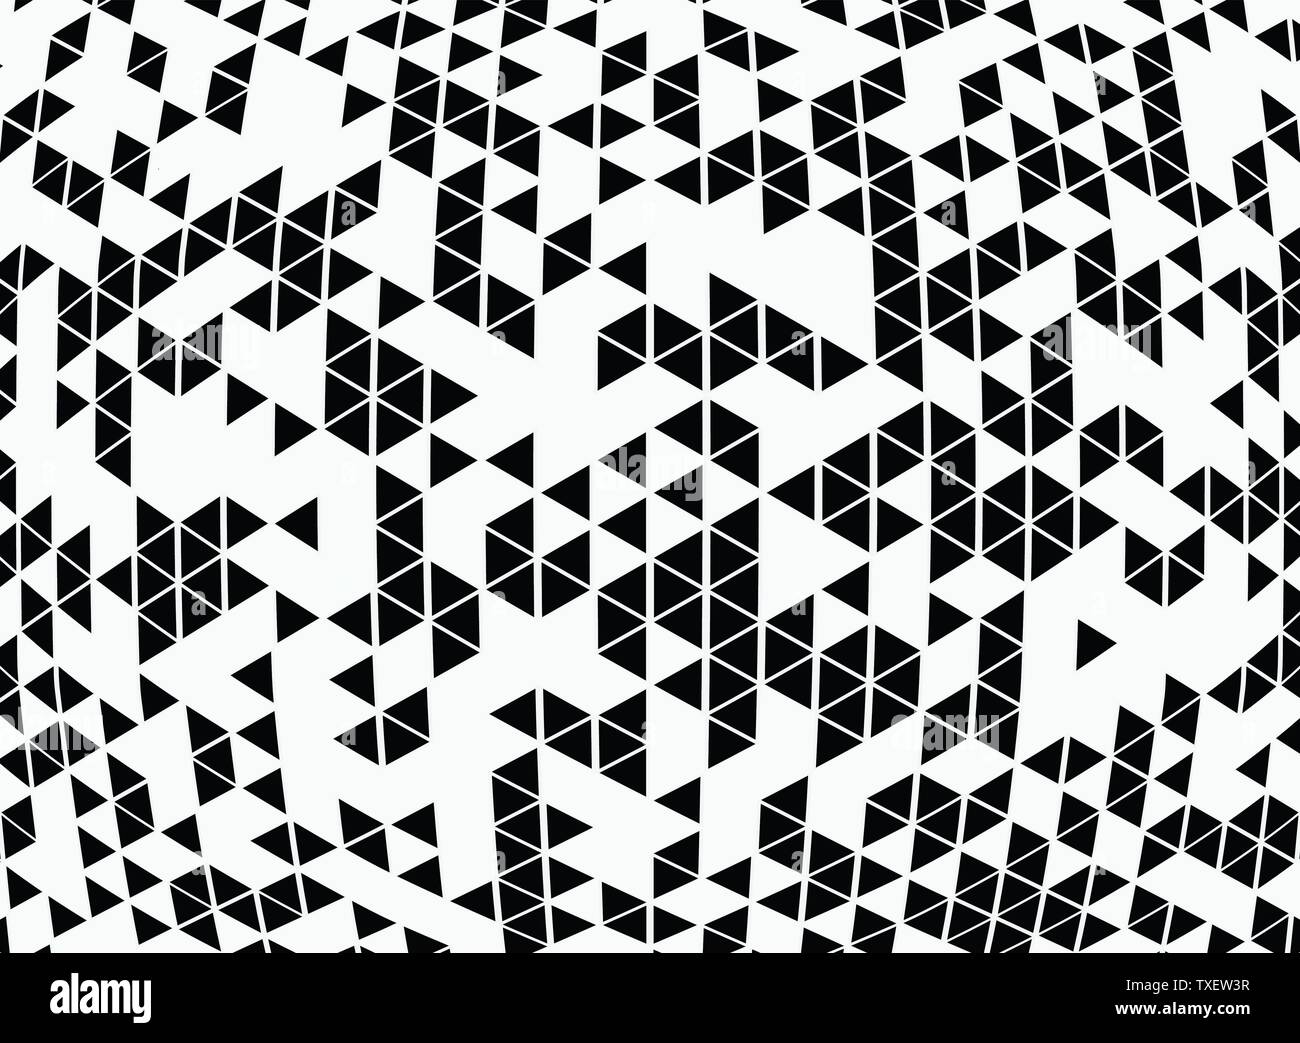 Abstract in bianco e nero disegno geometrico background di design di decor moderno. È possibile utilizzare per la progettazione del disegno di distribuzione degli annunci, poster, artwork, modello Illustrazione Vettoriale